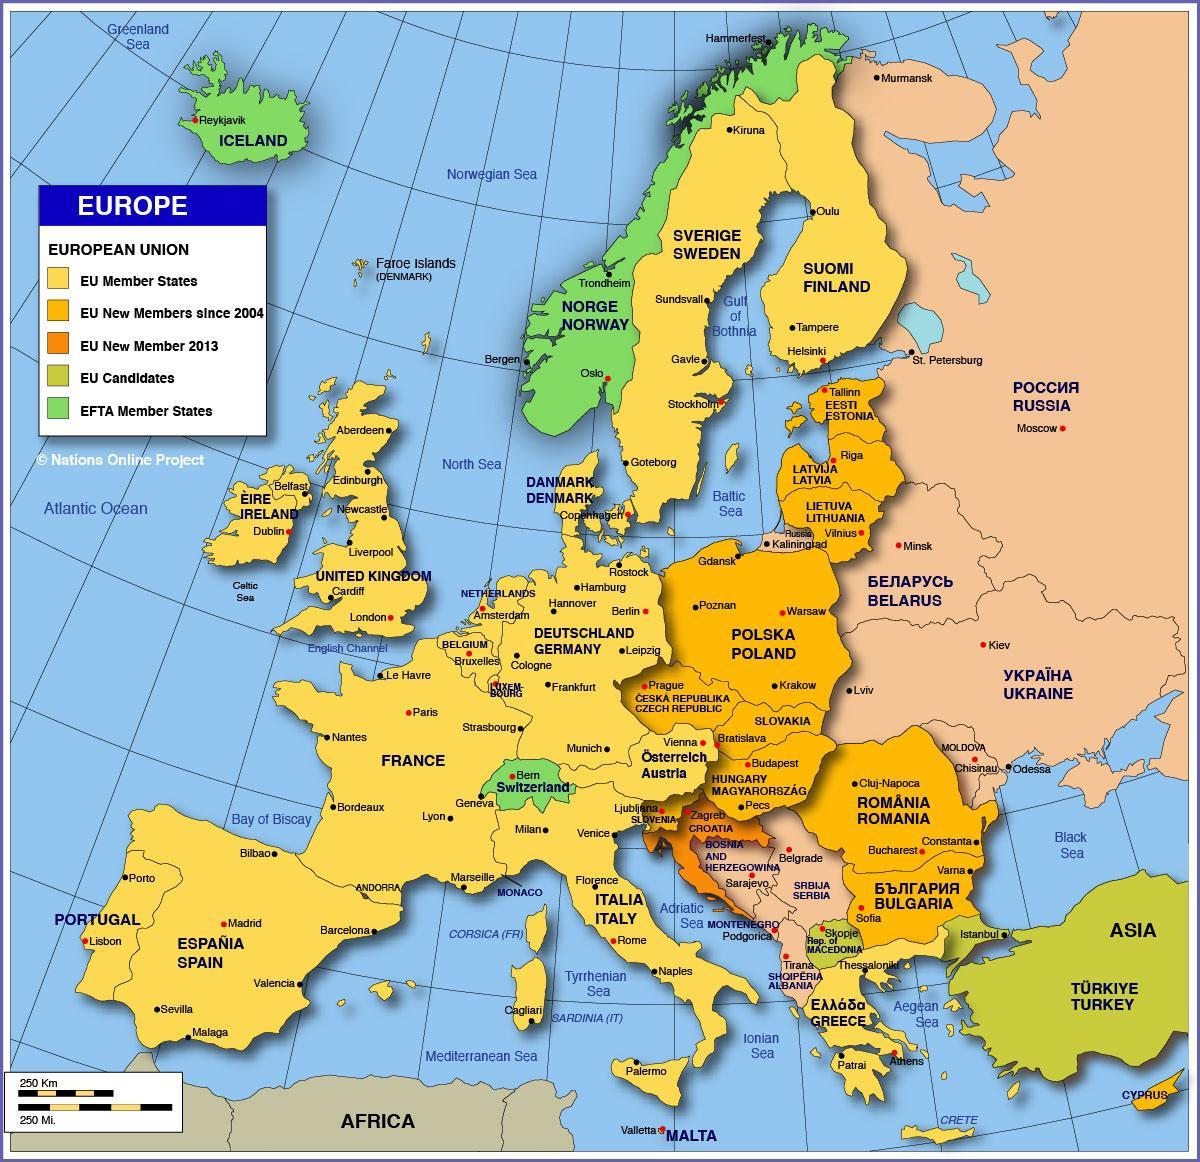 ماسکو پر یورپ کا نقشہ